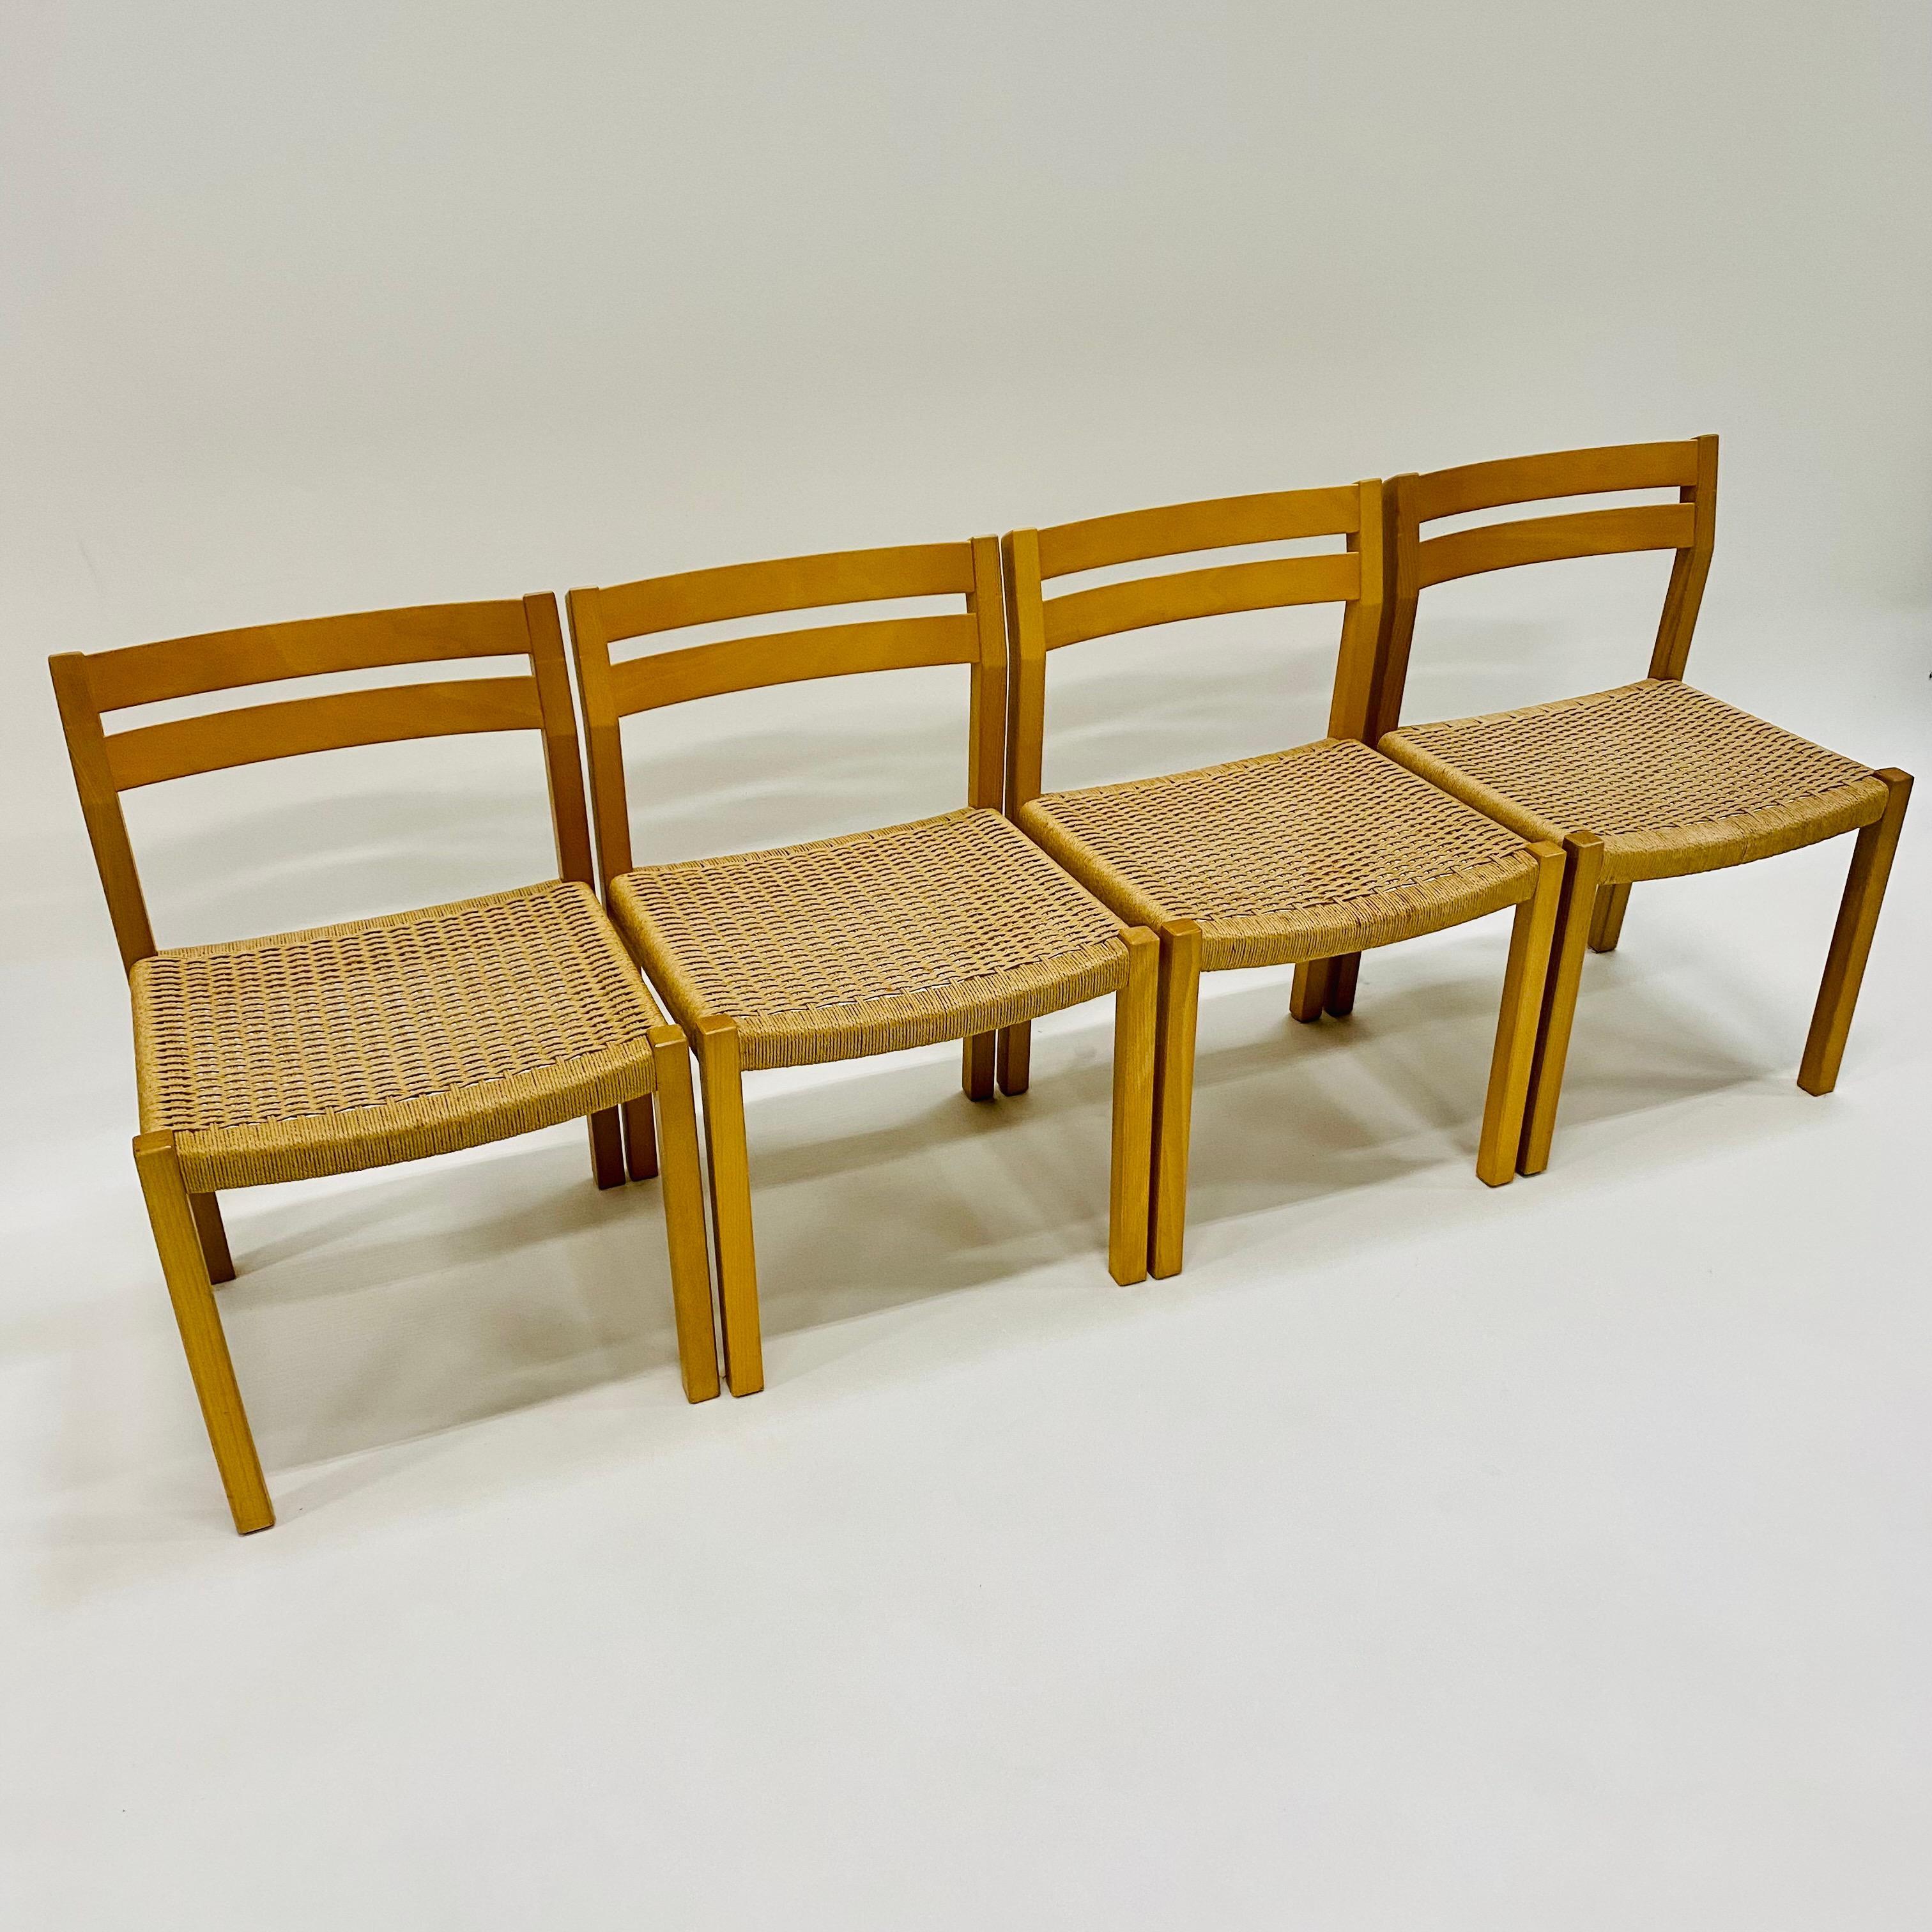 Vous recherchez des chaises de salle à manger élégantes et de grande qualité qui rehausseront l'aspect de votre maison ? Les chaises de salle à manger 401 de JL Møller Møbelfabrik sont idéales.

JL Møller Møbelfabrik est une marque de meubles